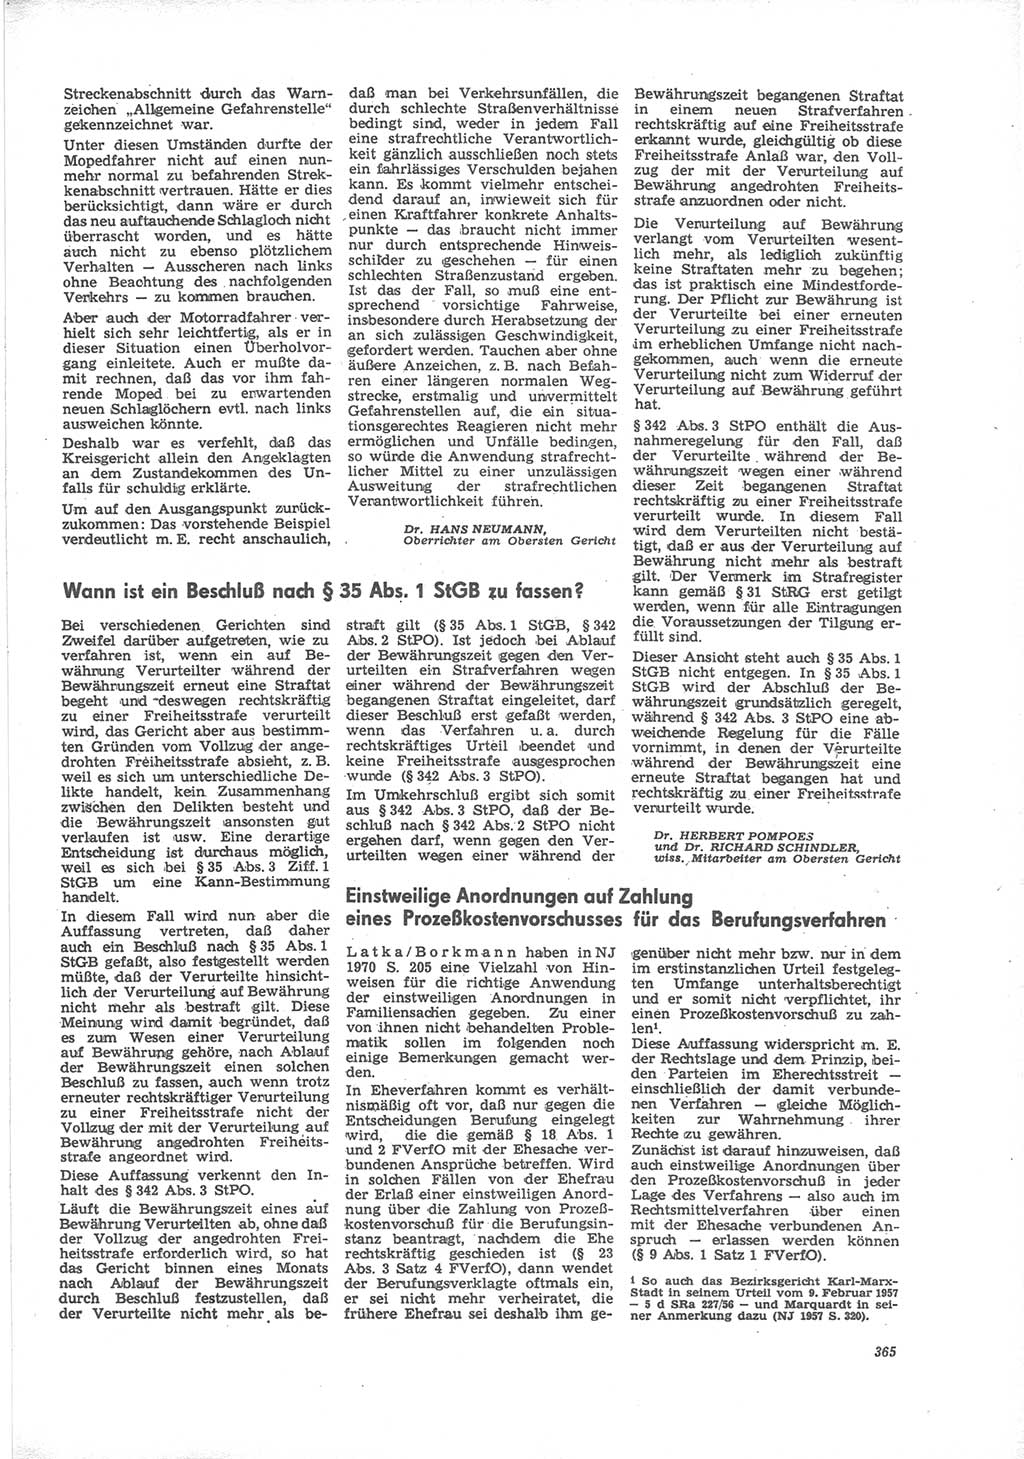 Neue Justiz (NJ), Zeitschrift für Recht und Rechtswissenschaft [Deutsche Demokratische Republik (DDR)], 24. Jahrgang 1970, Seite 365 (NJ DDR 1970, S. 365)